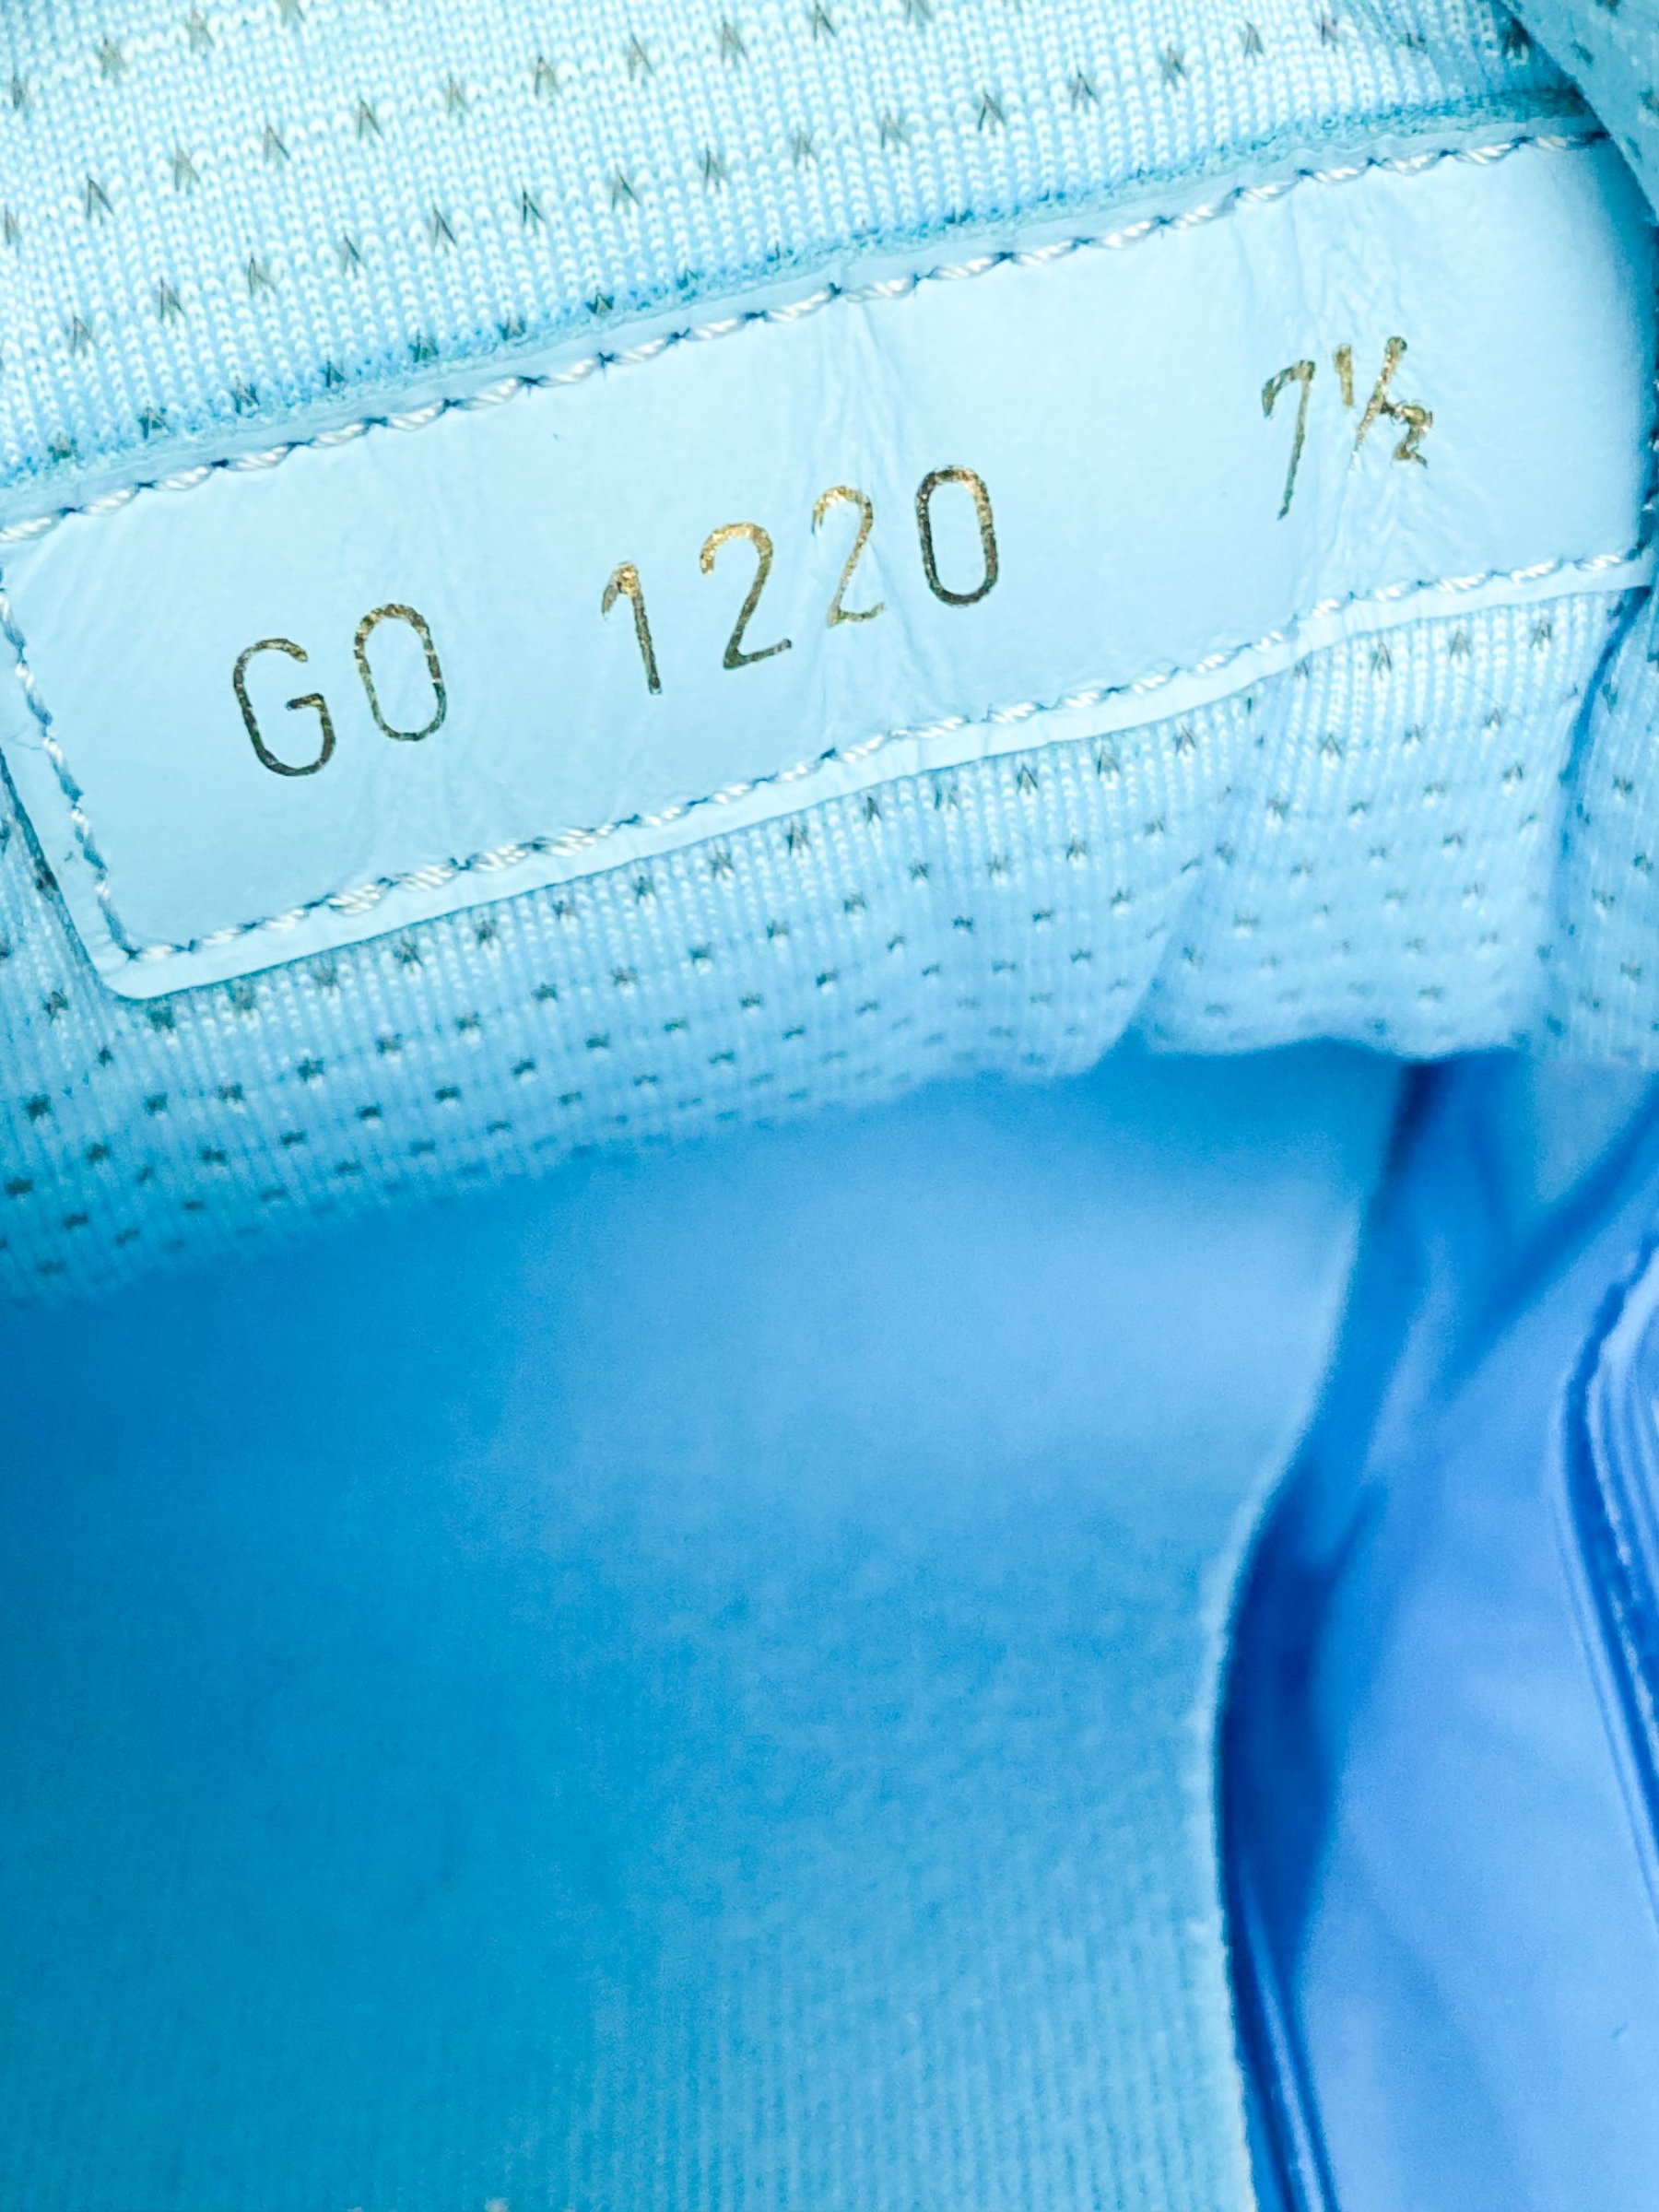 Louis Vuitton - Transparent Blue Trainer Sneakers – eluXive